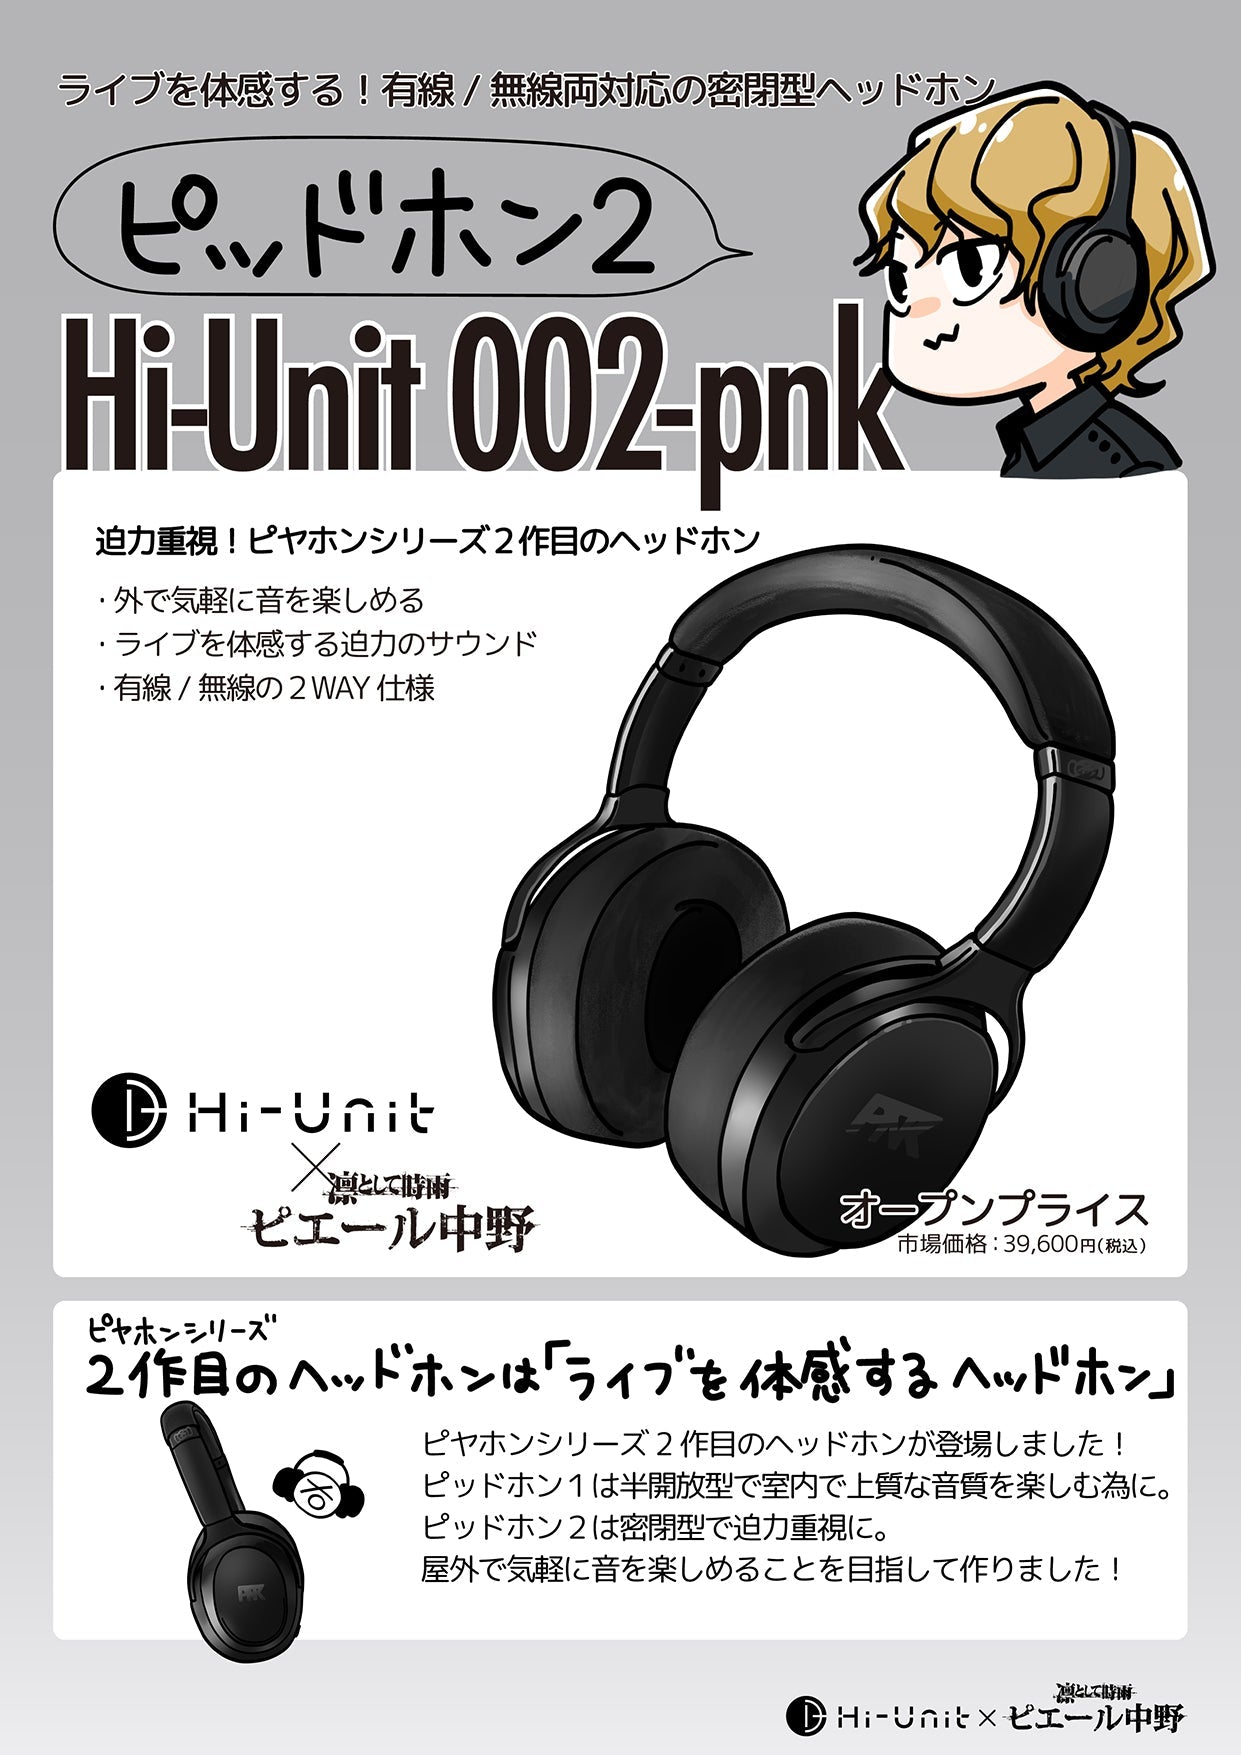 ●【特別価格】Hi-Unit 002-pnk ピッドホン2【送料無料】